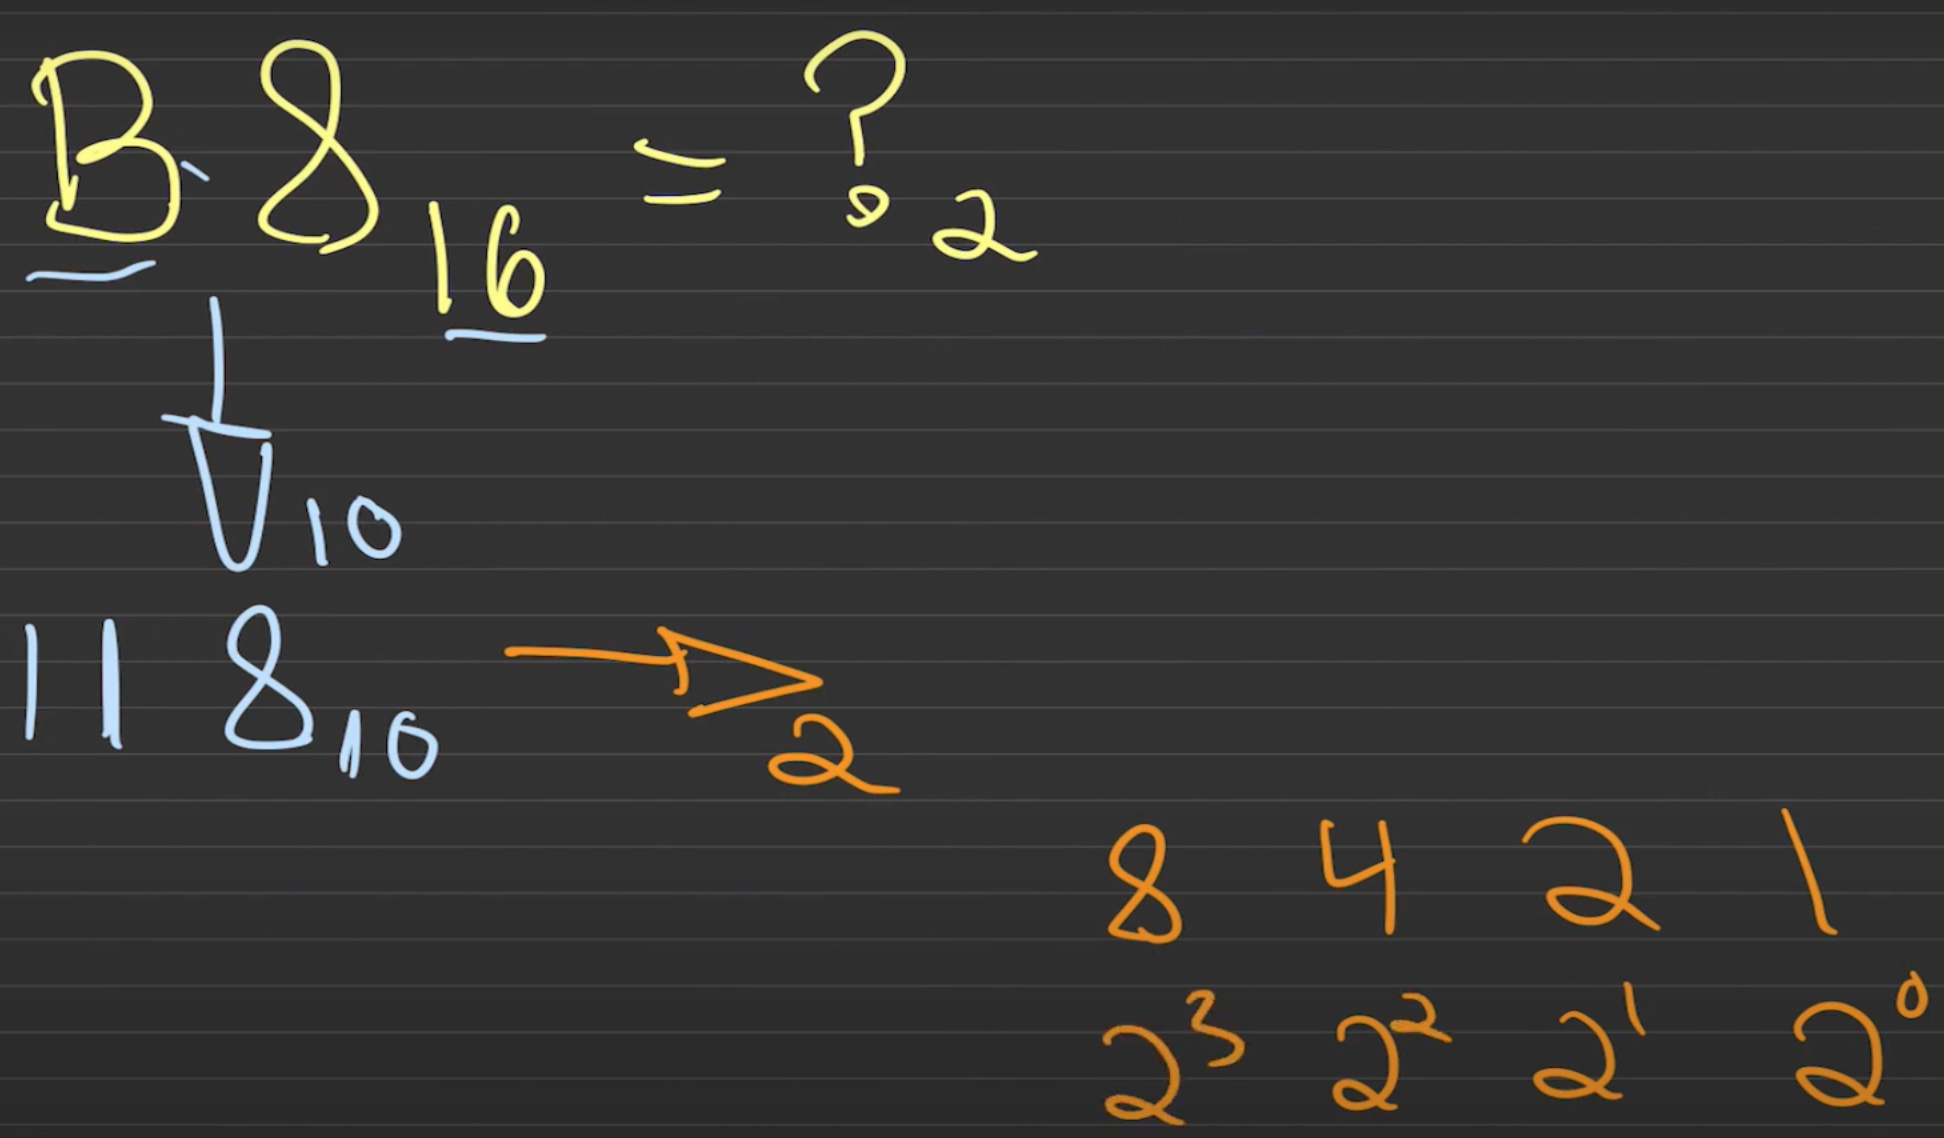 Cómo convertir de hexadecimal a binario segundo paso